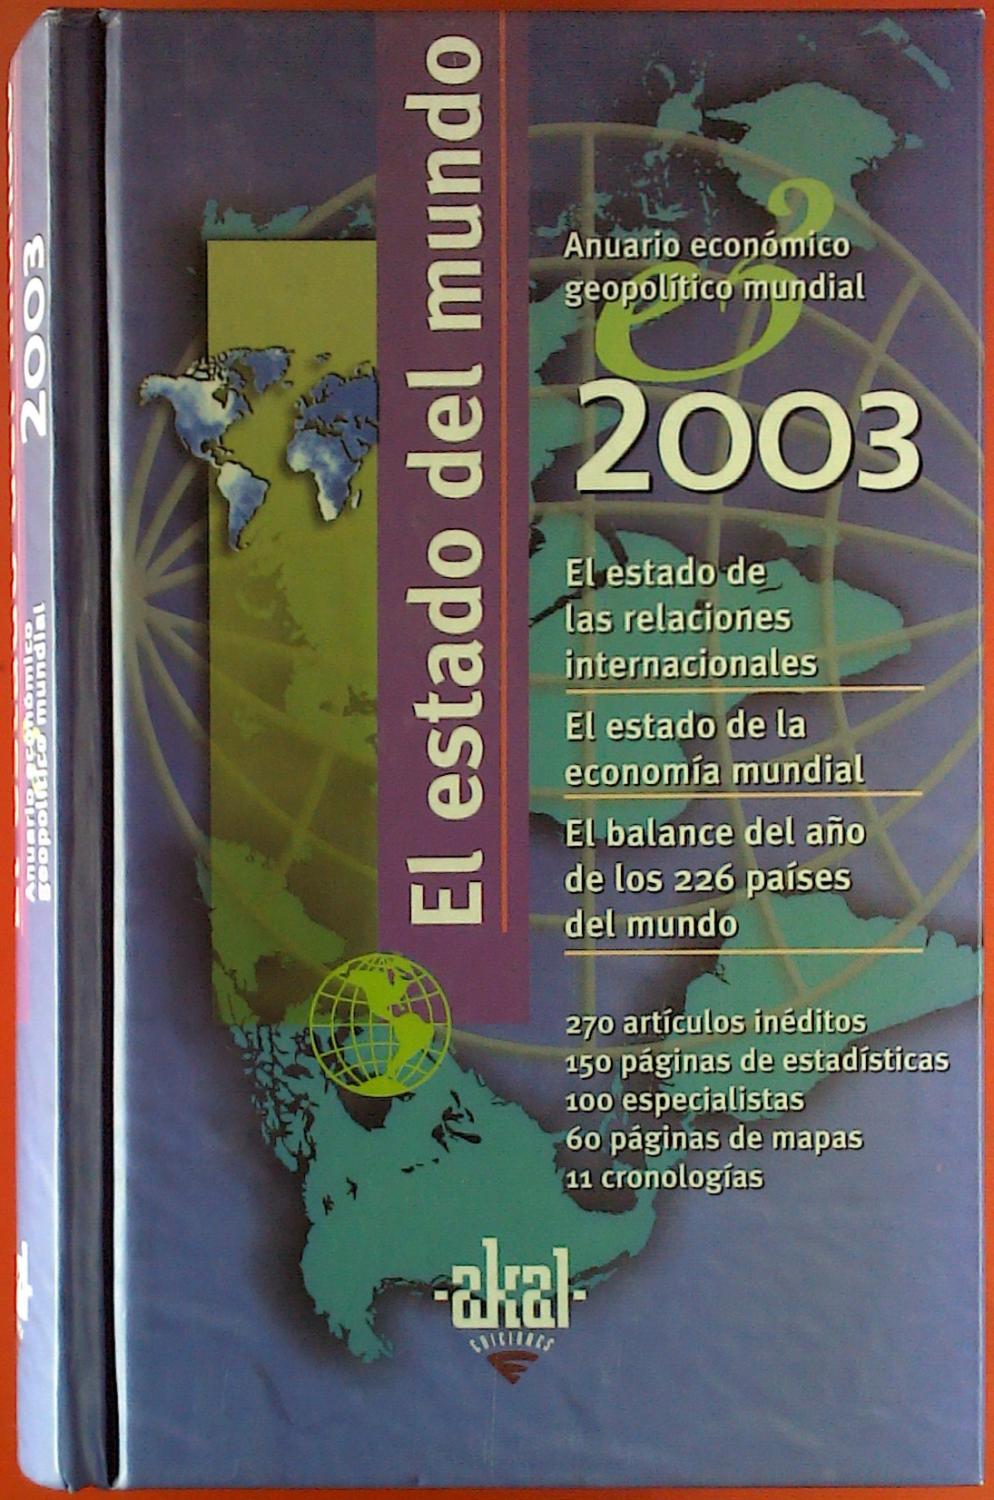 El estado del mundo. Anuario economico geopolitico mundial 2003. - Rosa Mecha Lopez